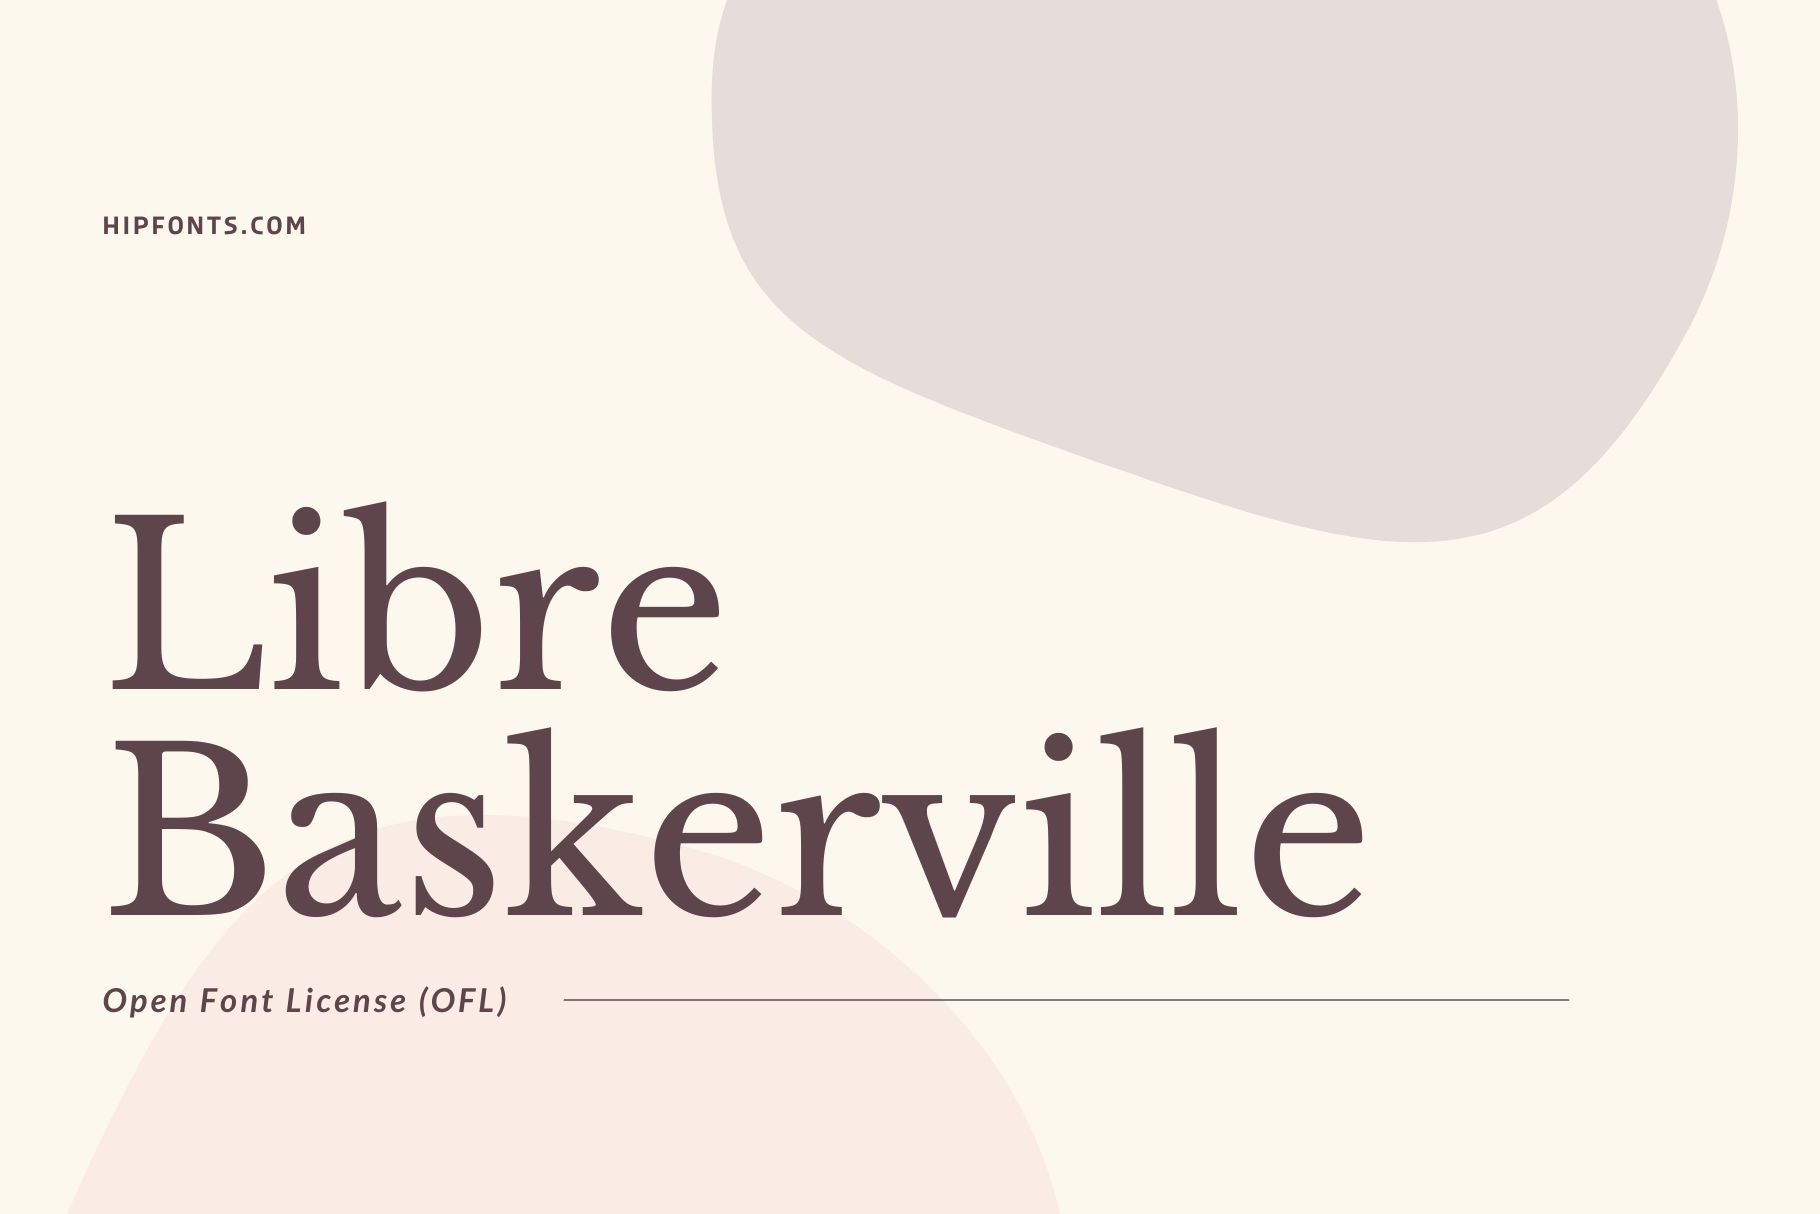 baskerville font download for photoshop